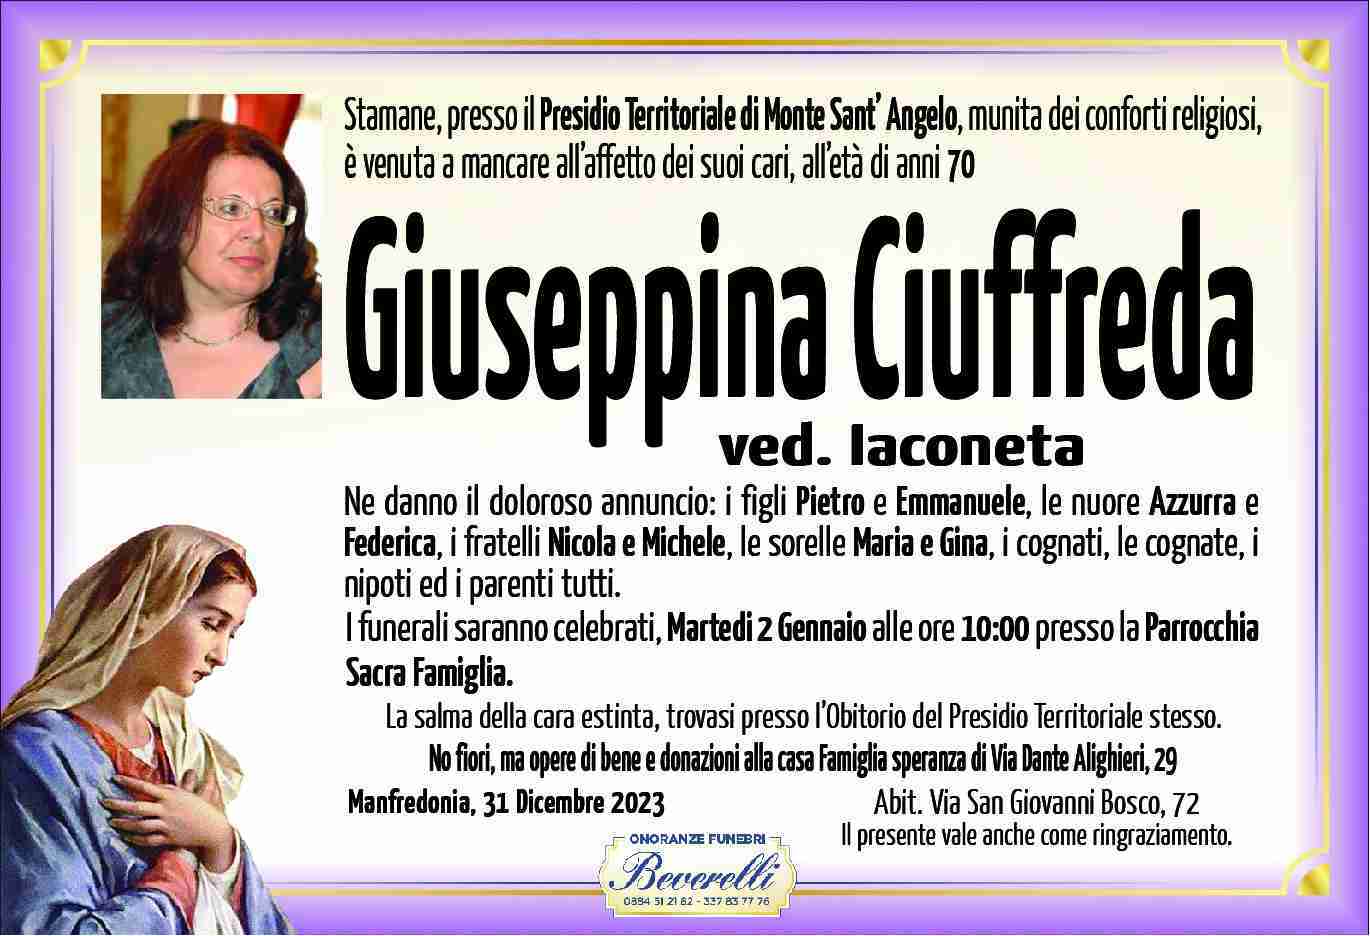 Giuseppina Giuffreda